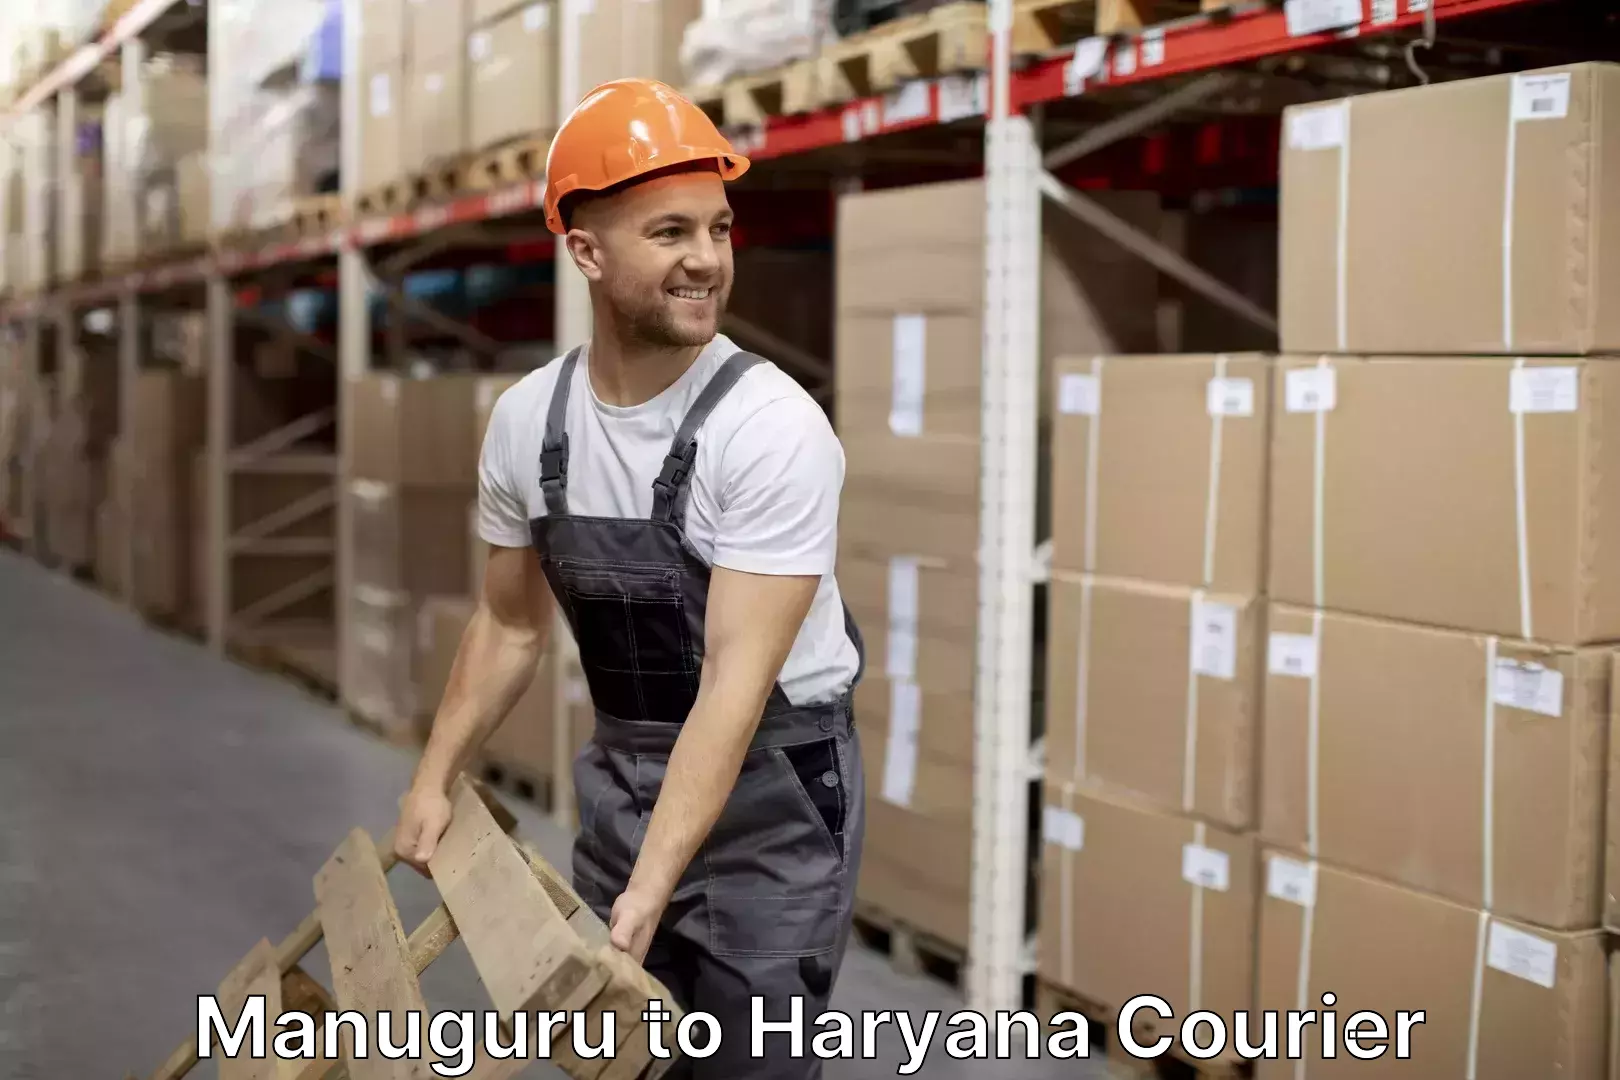 Home moving experts Manuguru to Haryana